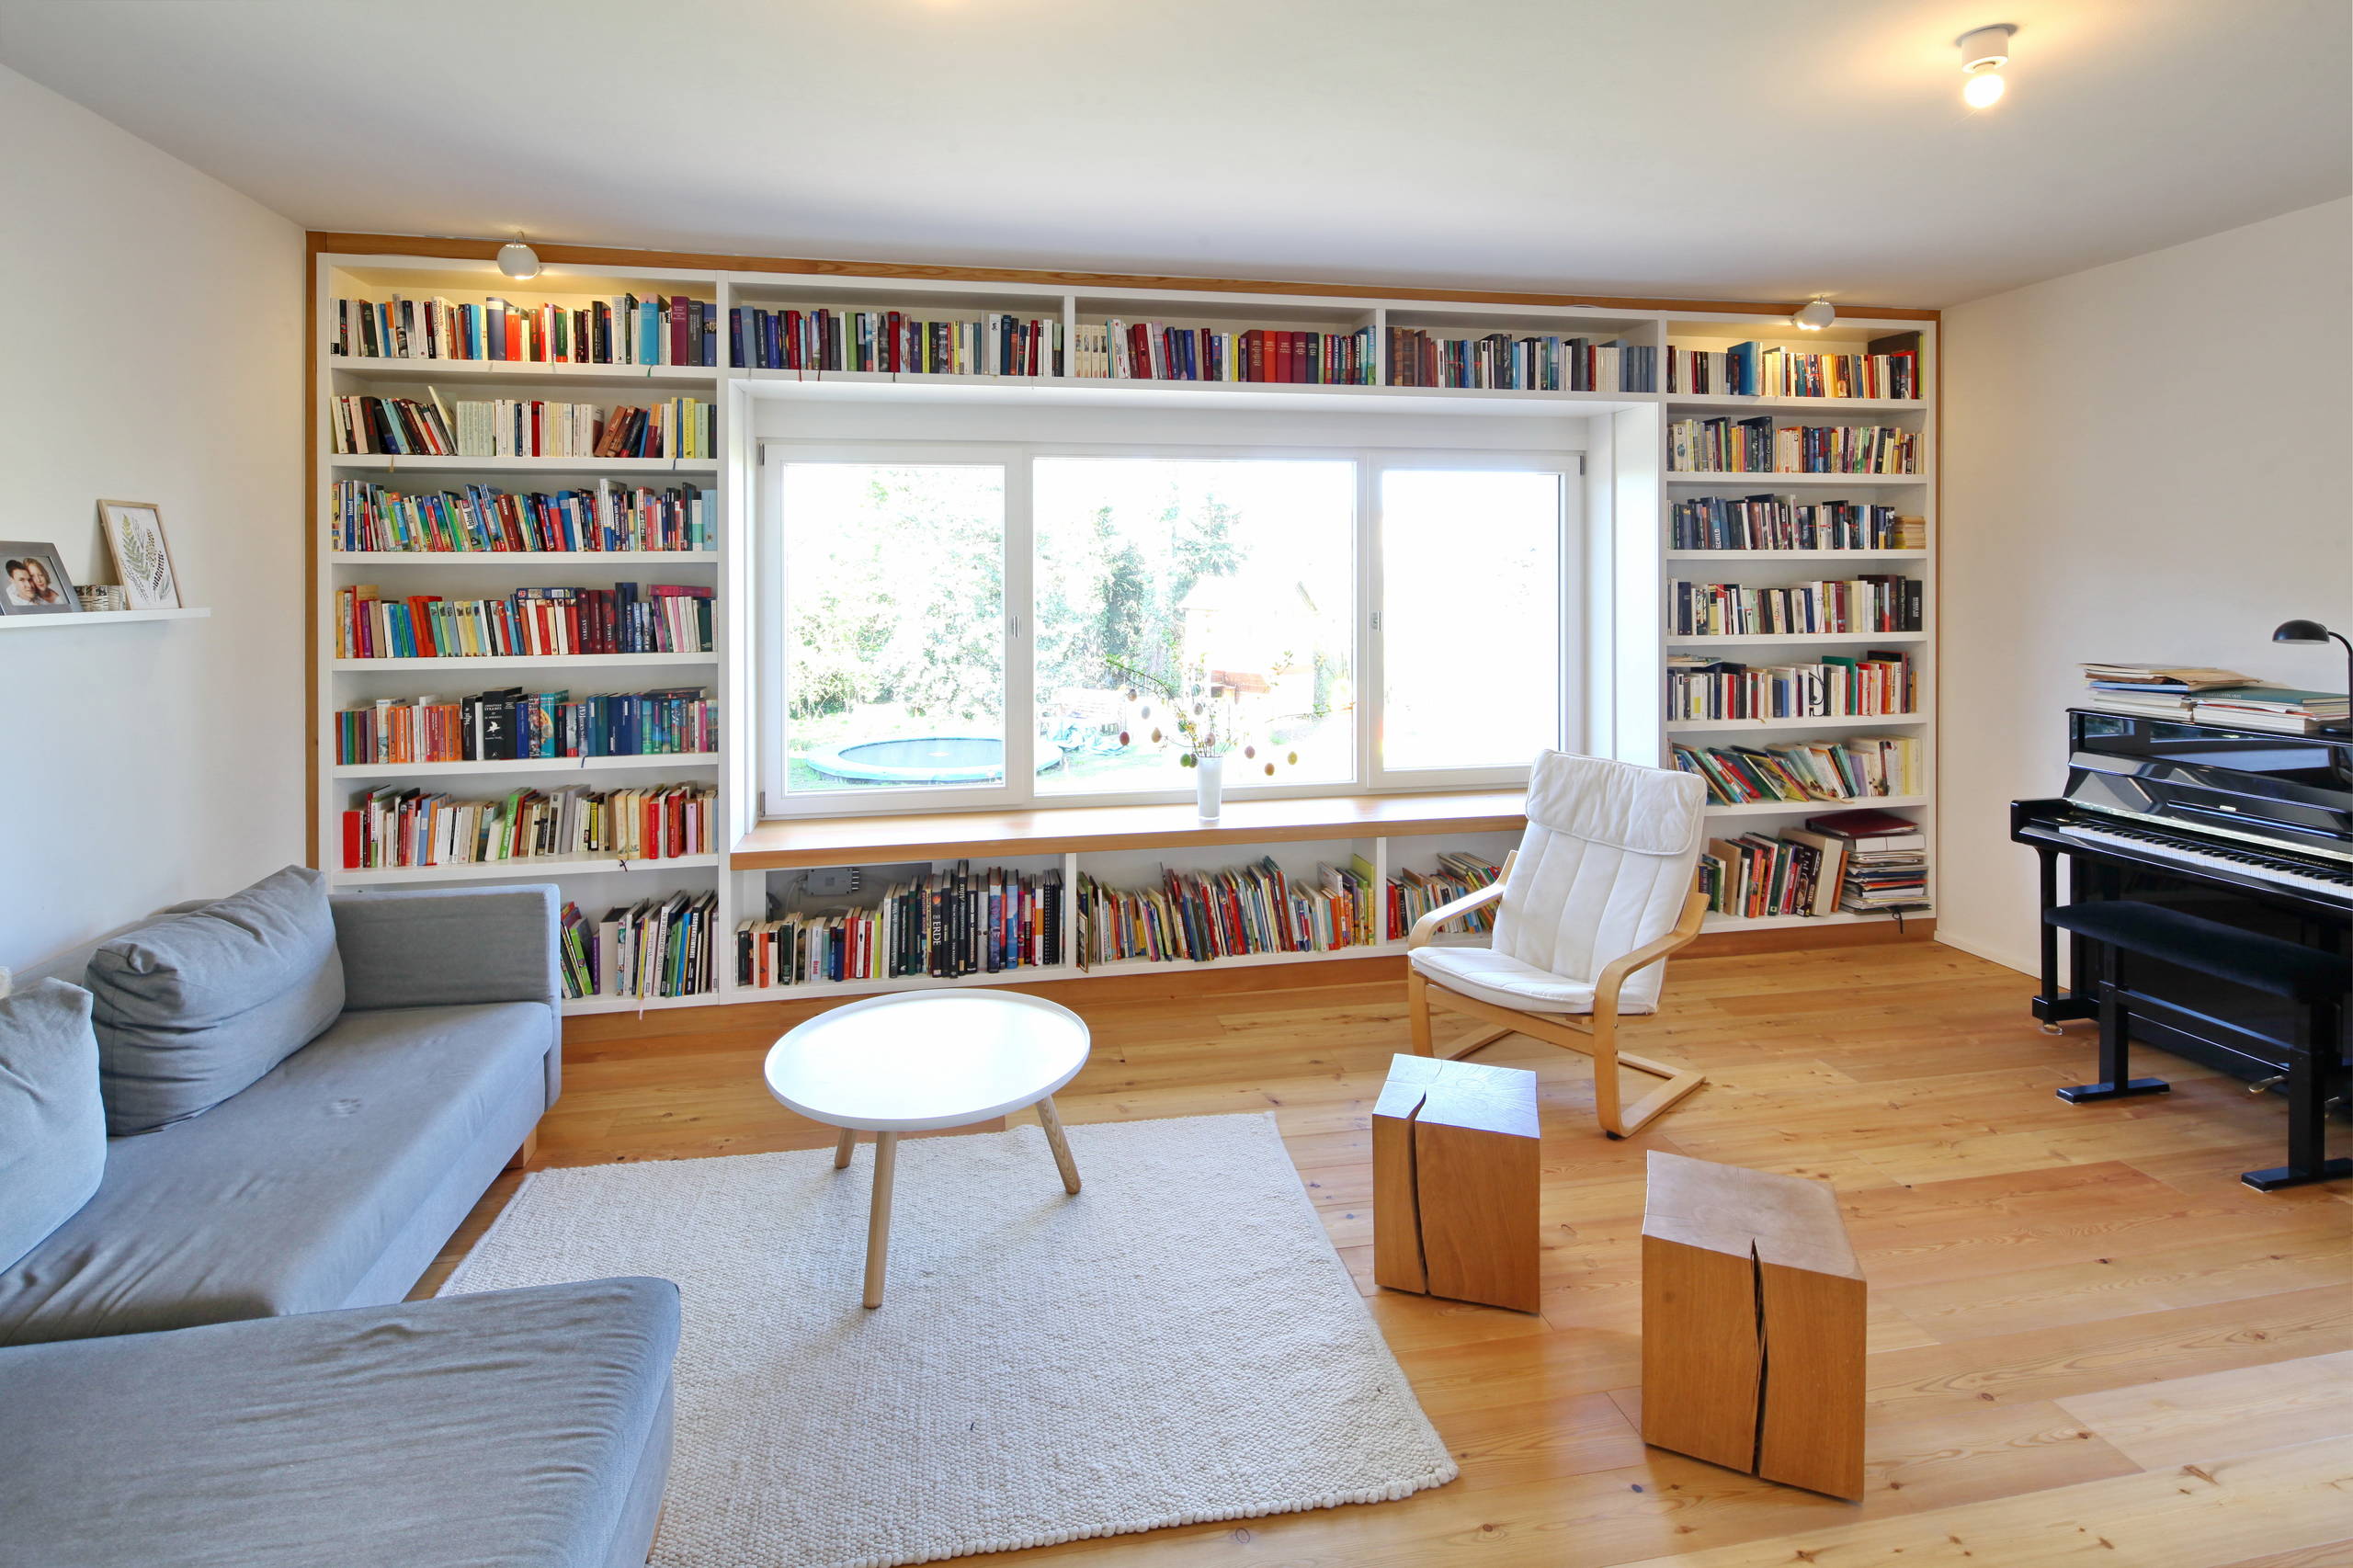 Stylische Idee: Eine Sitznische im Bücherregal